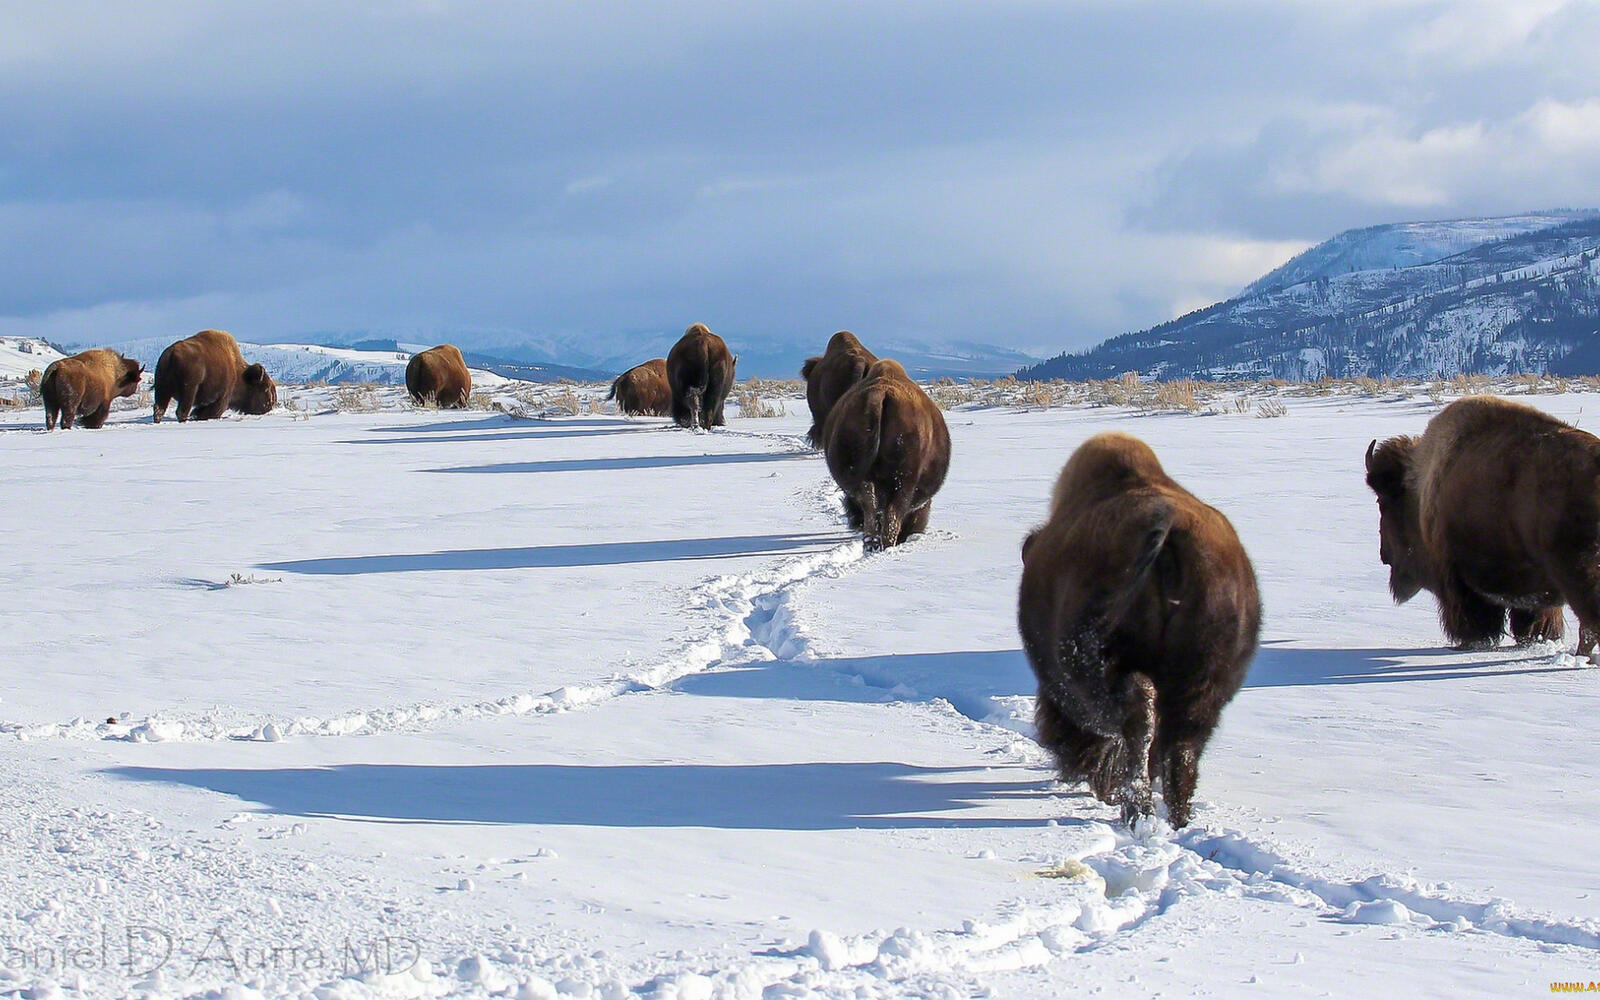 Wallpapers winter bison herd on the desktop